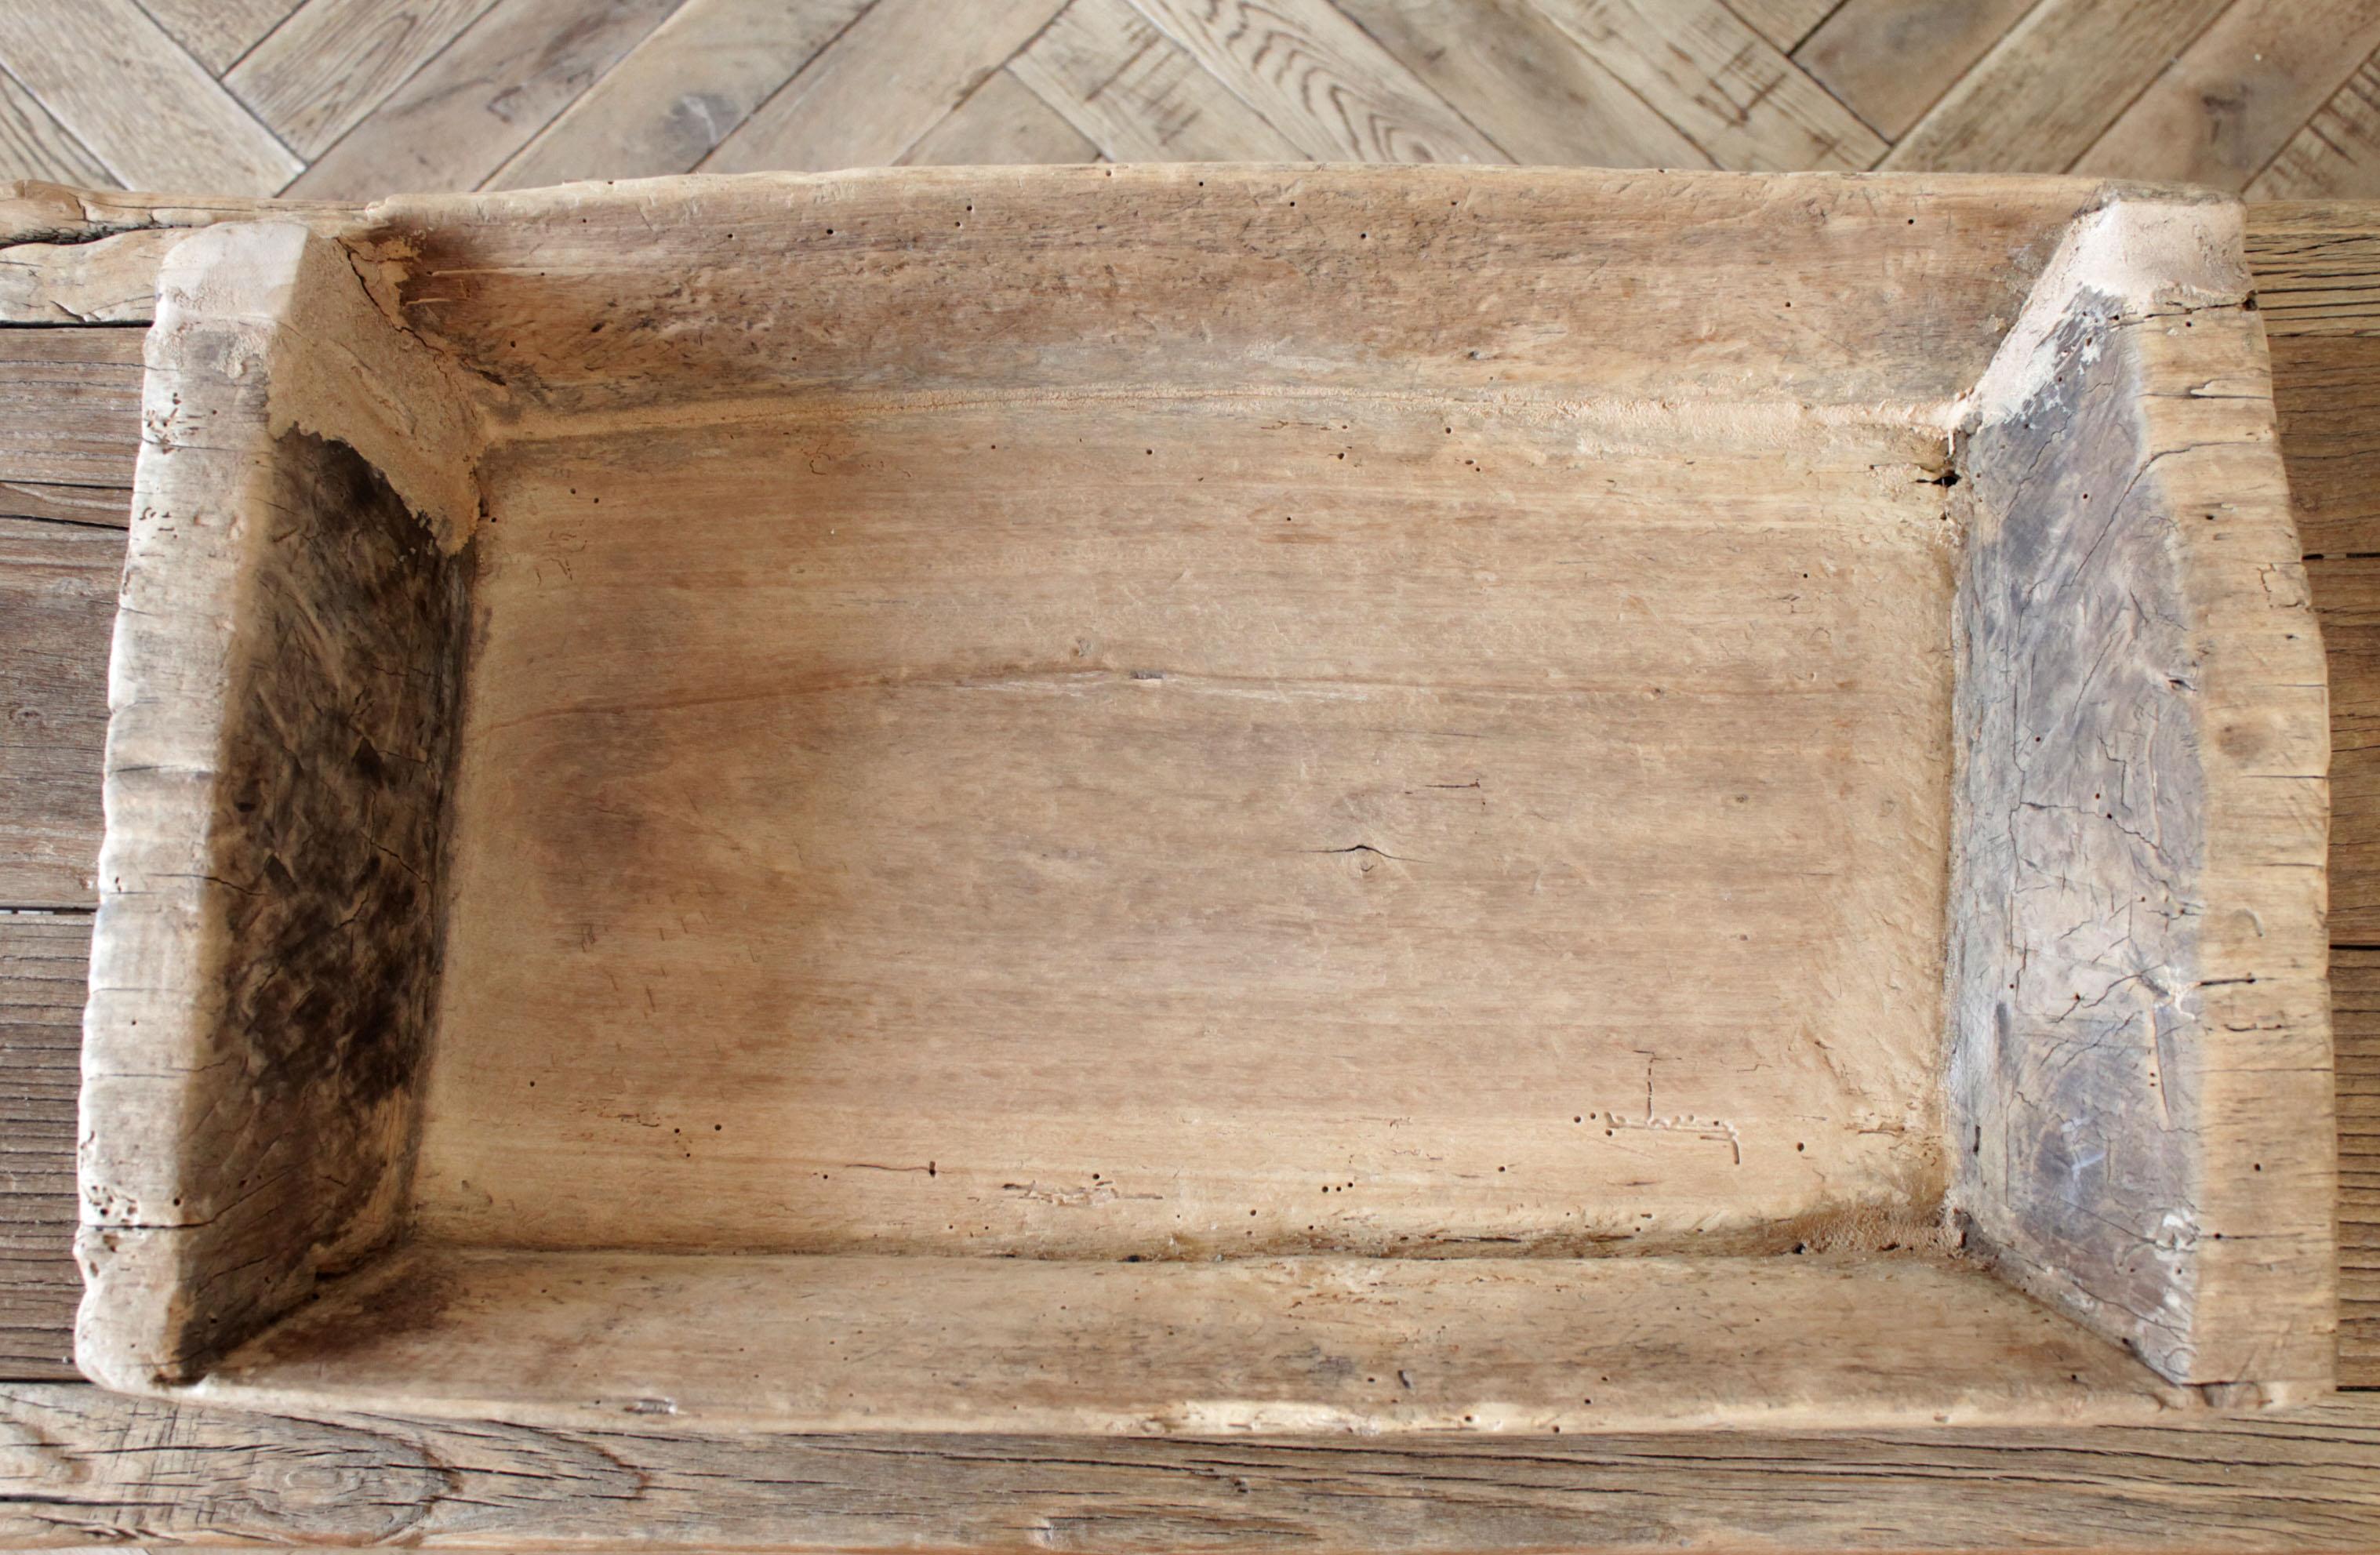 Antique primitive wood trough
Size: 26